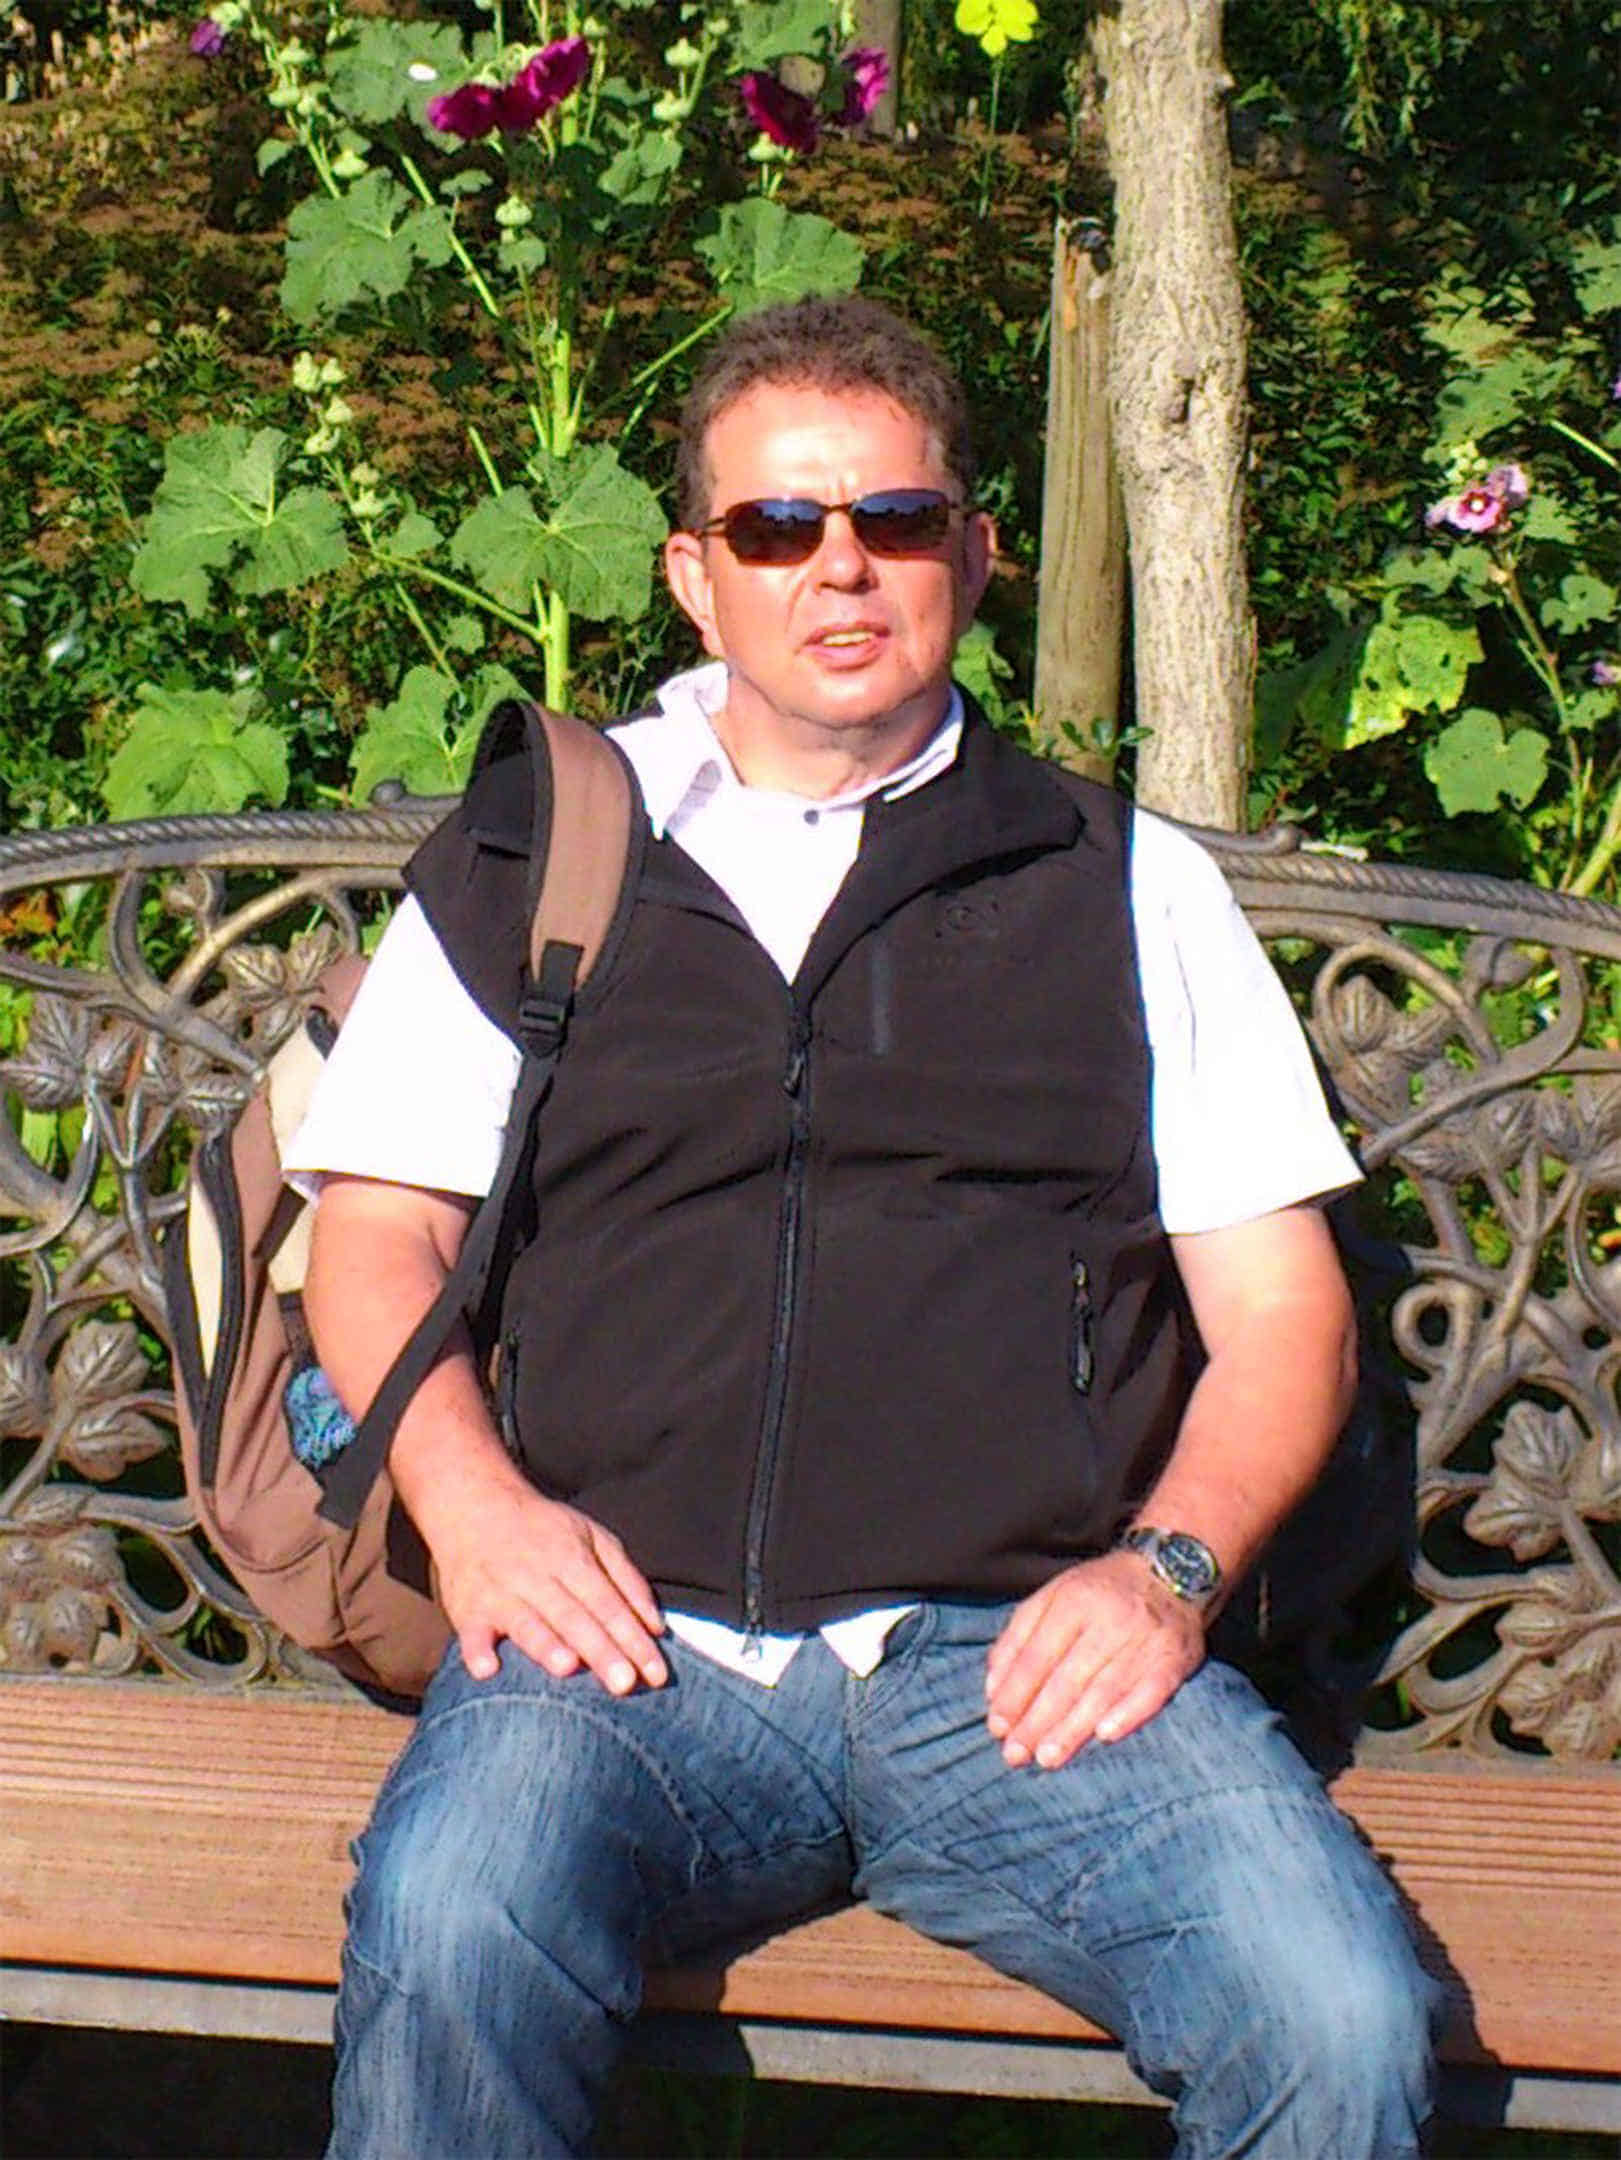 Foto: Joachim sitzt auf einer Parkbank in der Sonne.